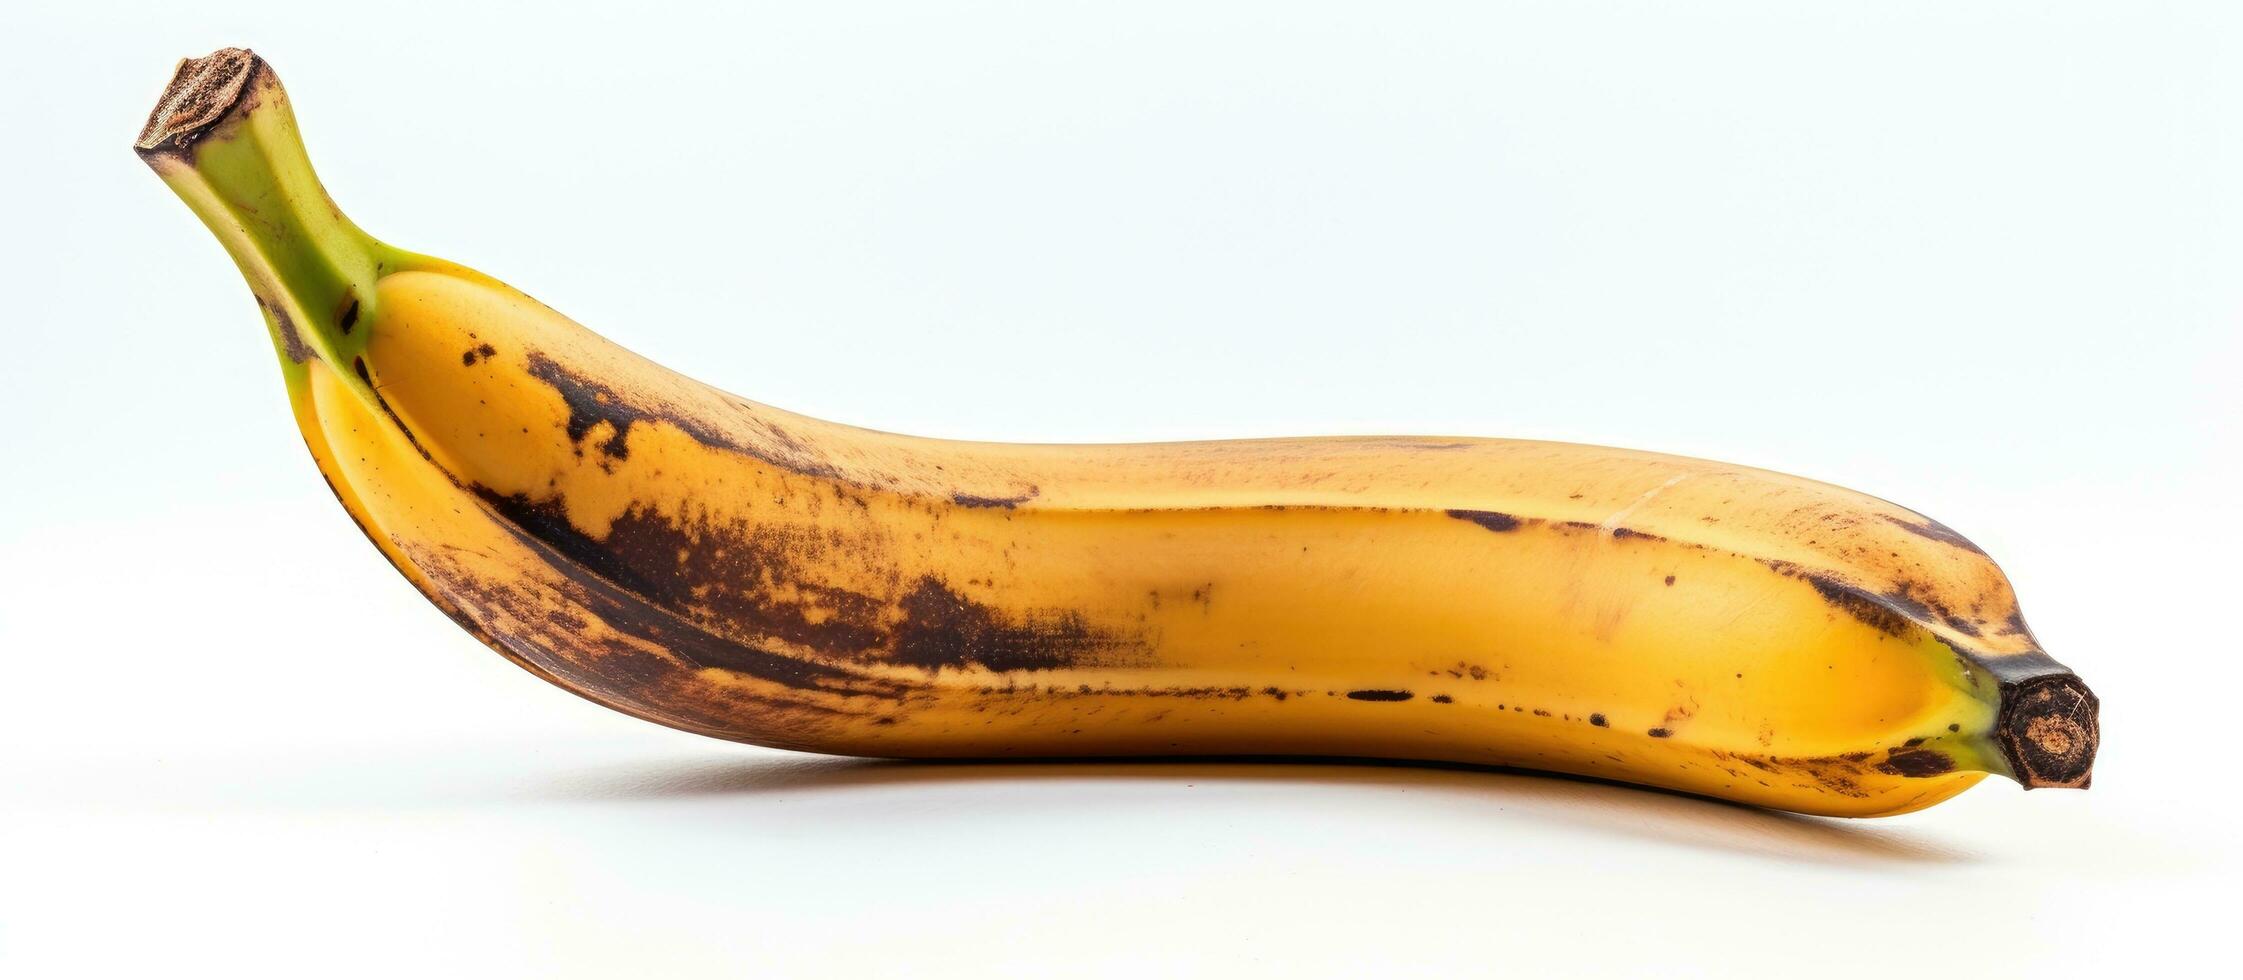 een banaan dat is verwend en zwart kan worden gezien Aan een wit achtergrond. het heeft een bruin plek en is foto